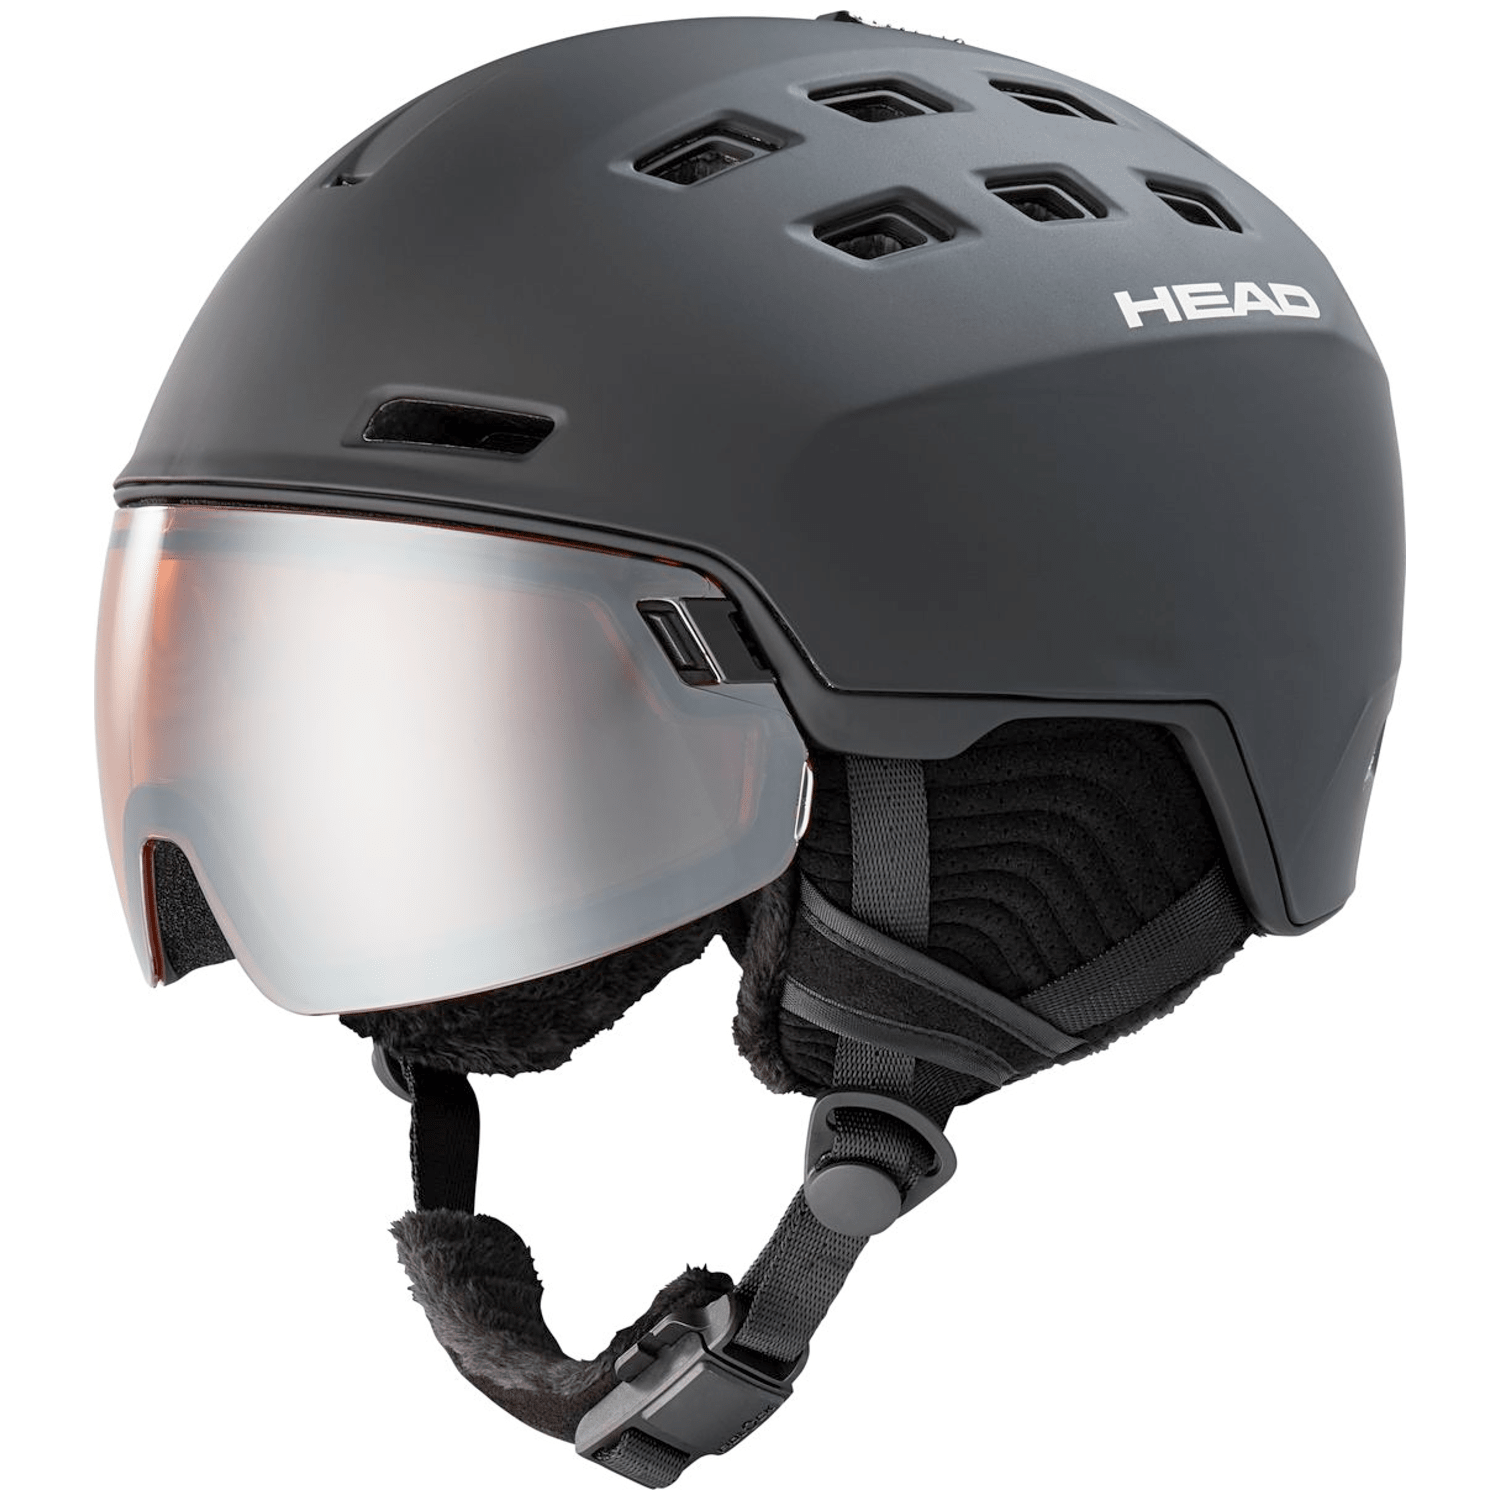 Head Radar Helm